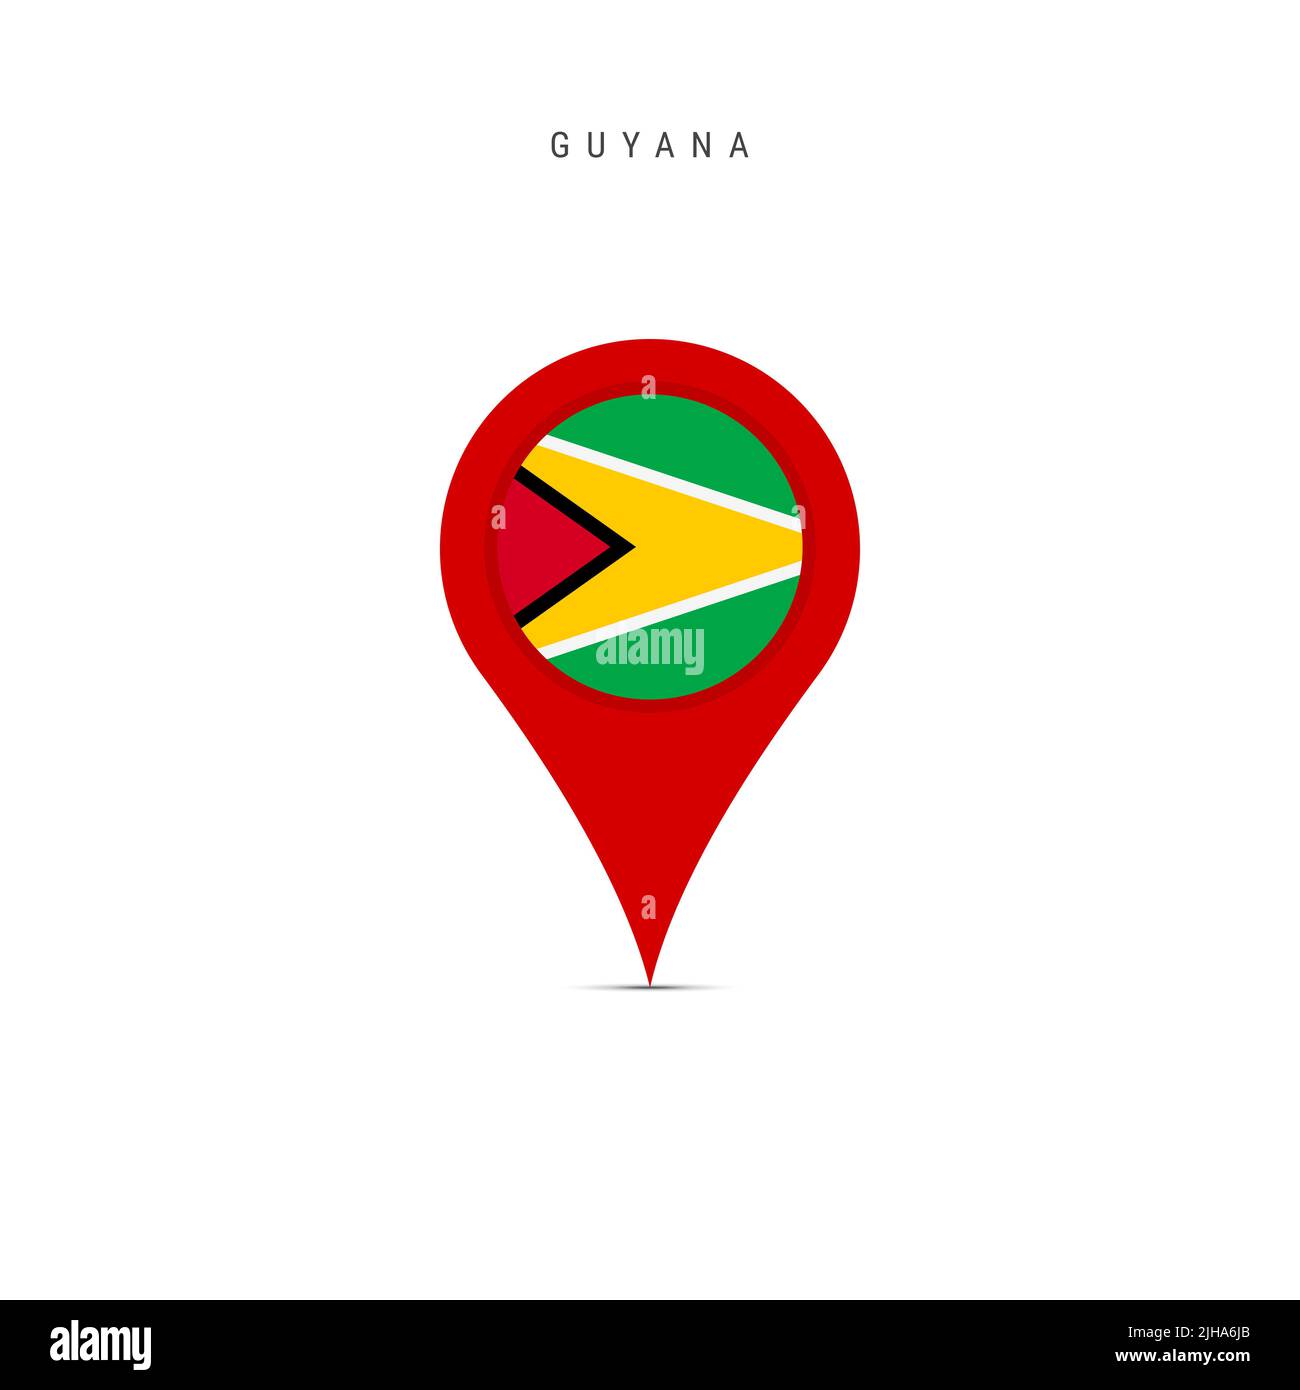 Teardrop-Kartenmarkierung mit Flagge von Guyana. Guyanische Flagge in den Pin der Standortkarte eingefügt. Flache Abbildung isoliert auf weißem Hintergrund. Stockfoto